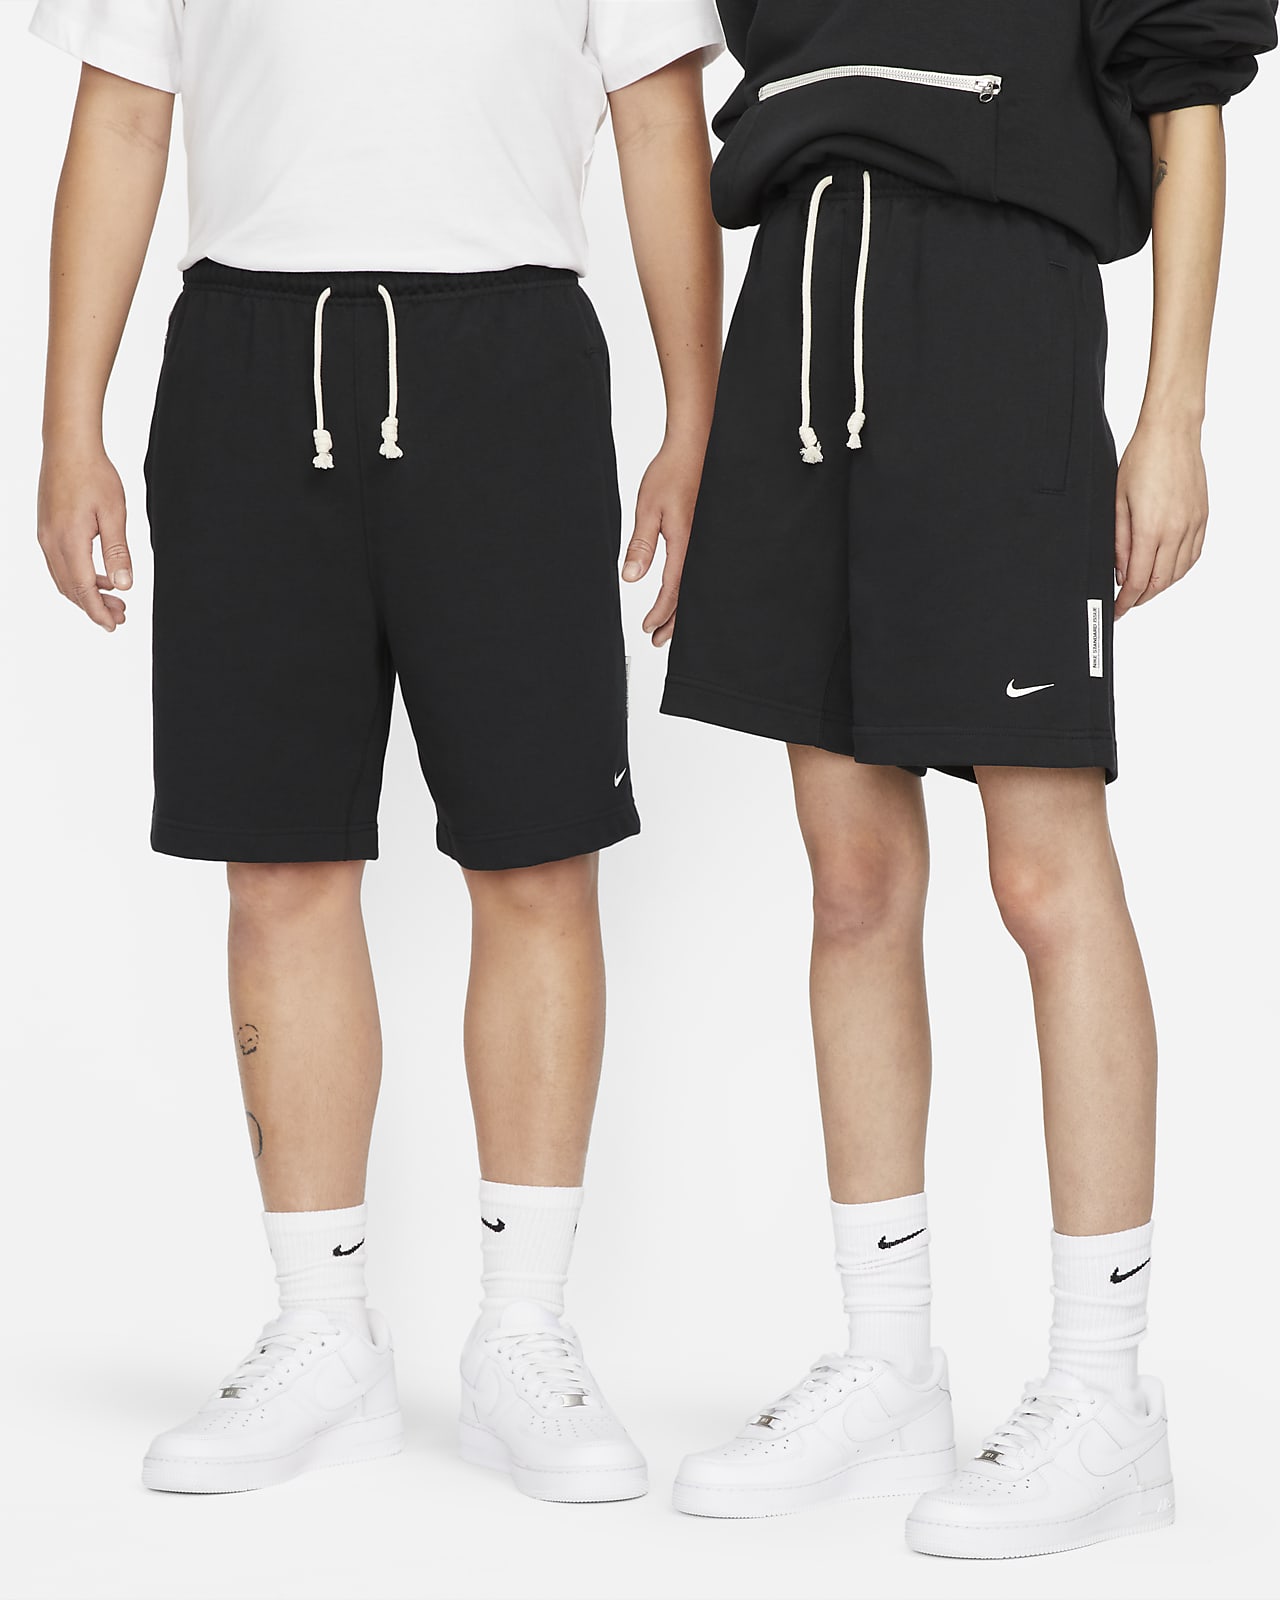 Pánské 20cm basketbalové kraťasy Nike Standard Issue Dri-FIT